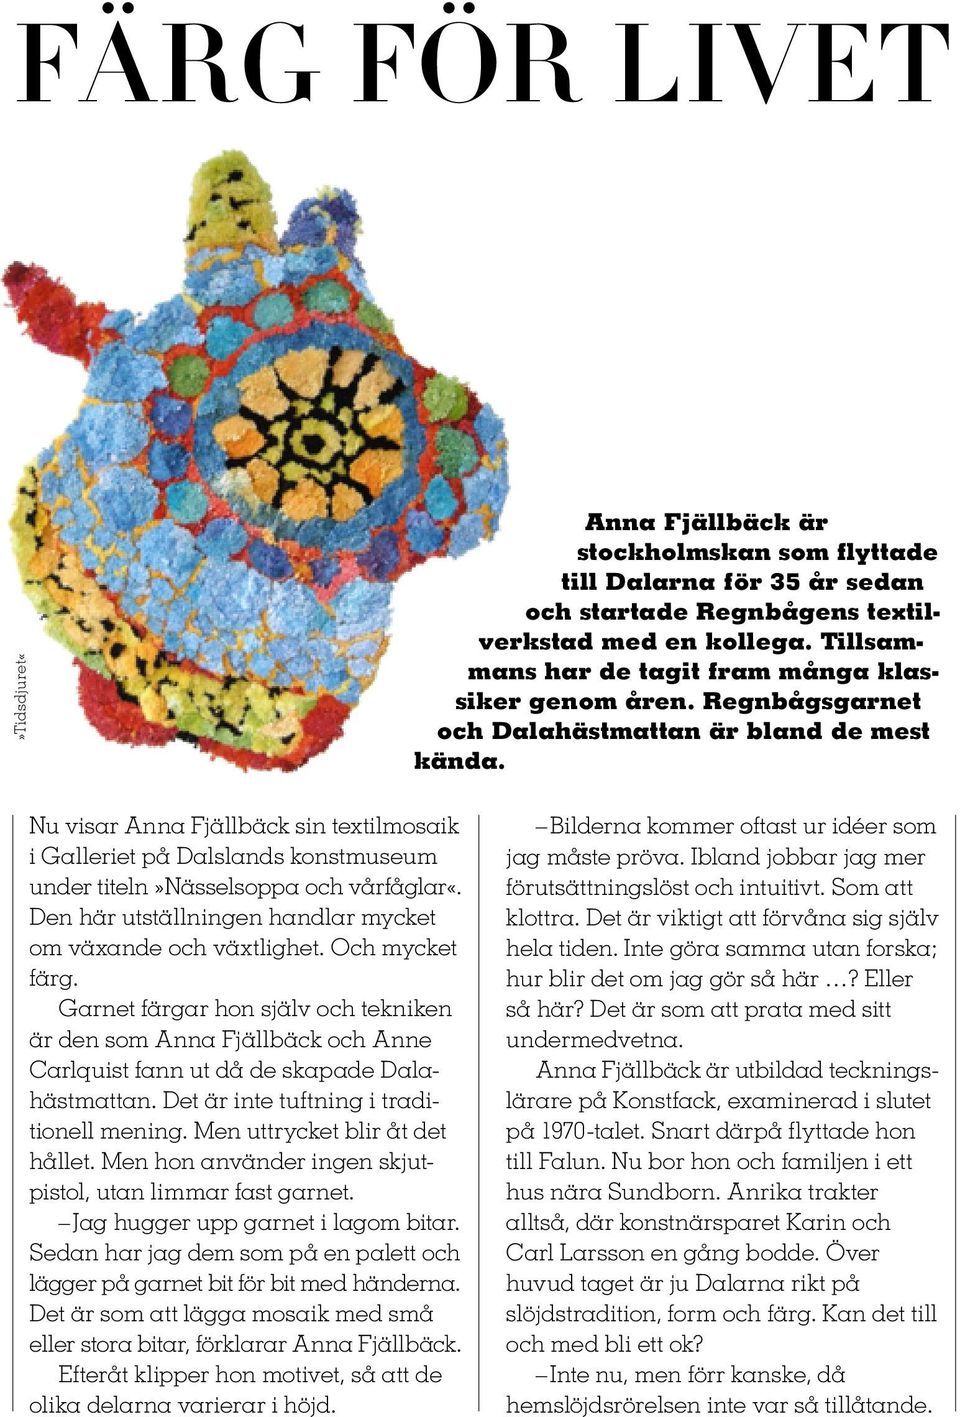 Nu visar Anna Fjällbäck sin textilmosaik i Galleriet på Dalslands konstmuseum under titeln»nässelsoppa och vårfåglar«. Den här utställningen handlar mycket om växande och växtlighet. Och mycket färg.